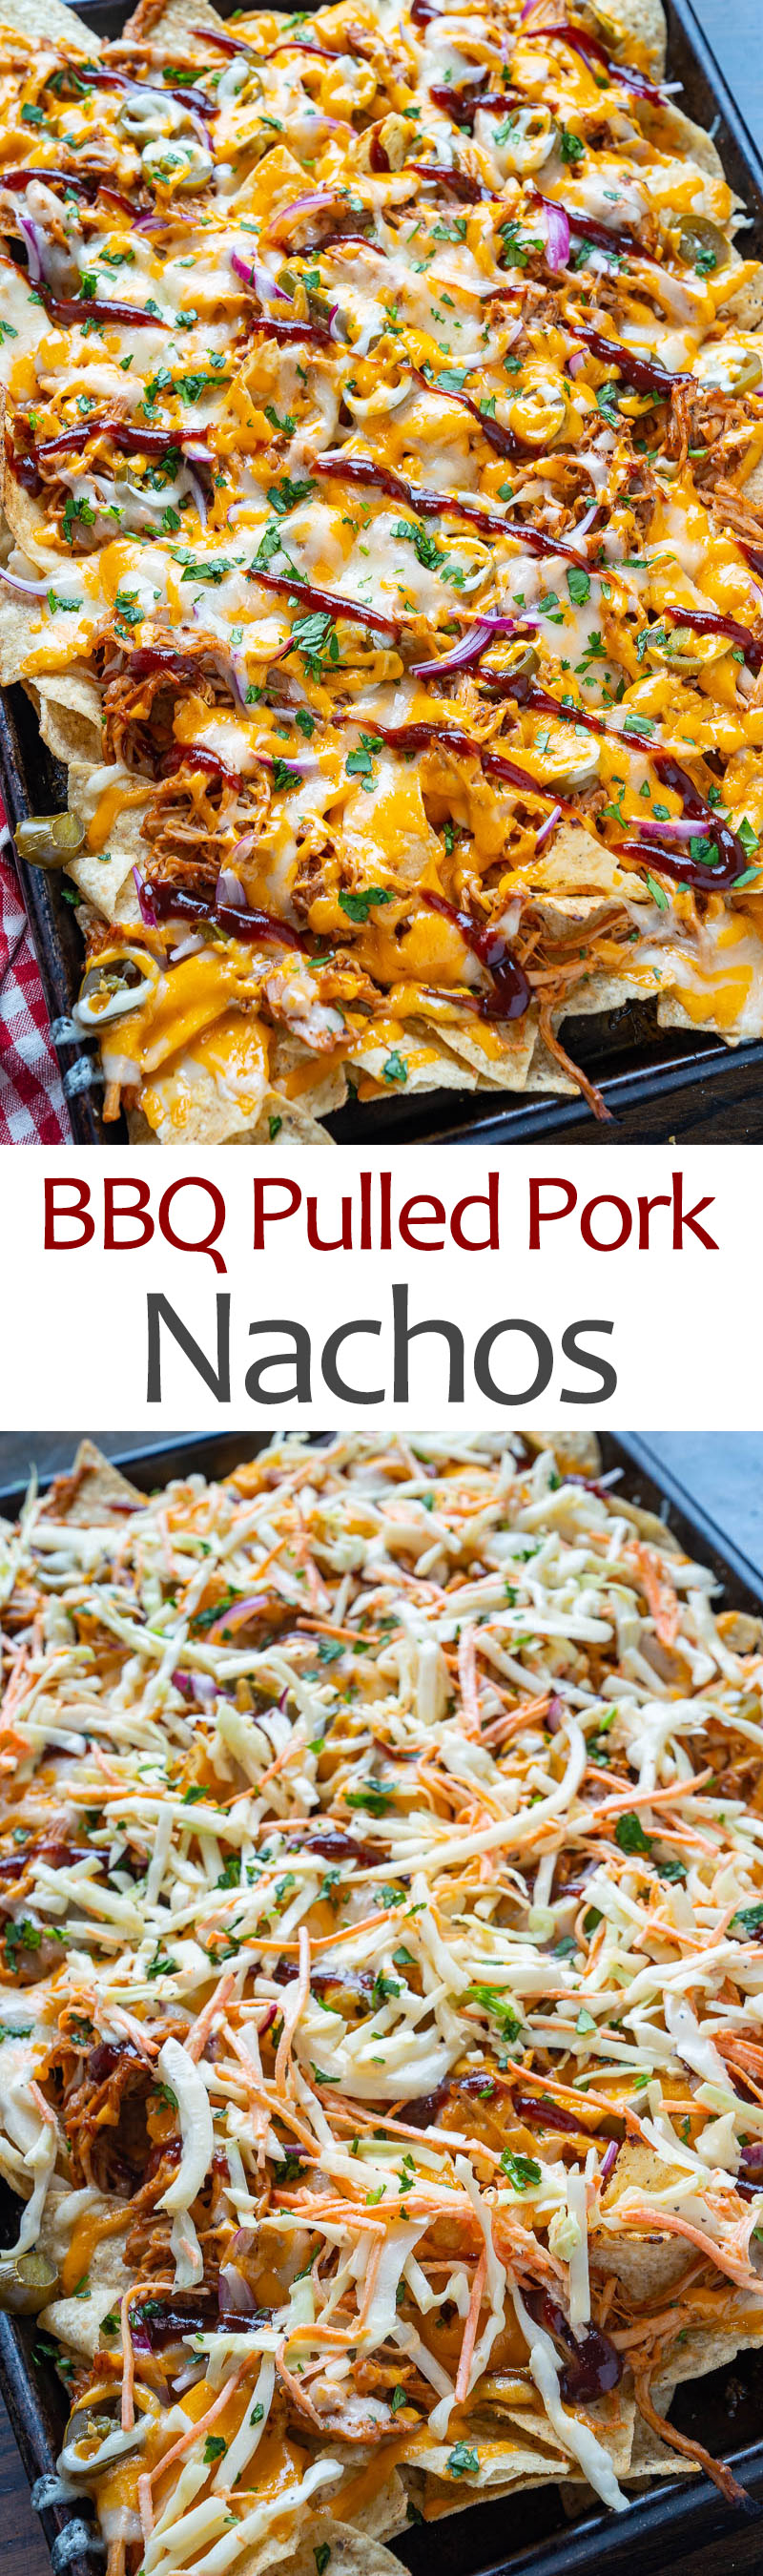 BBQ Pulled Pork Nachos